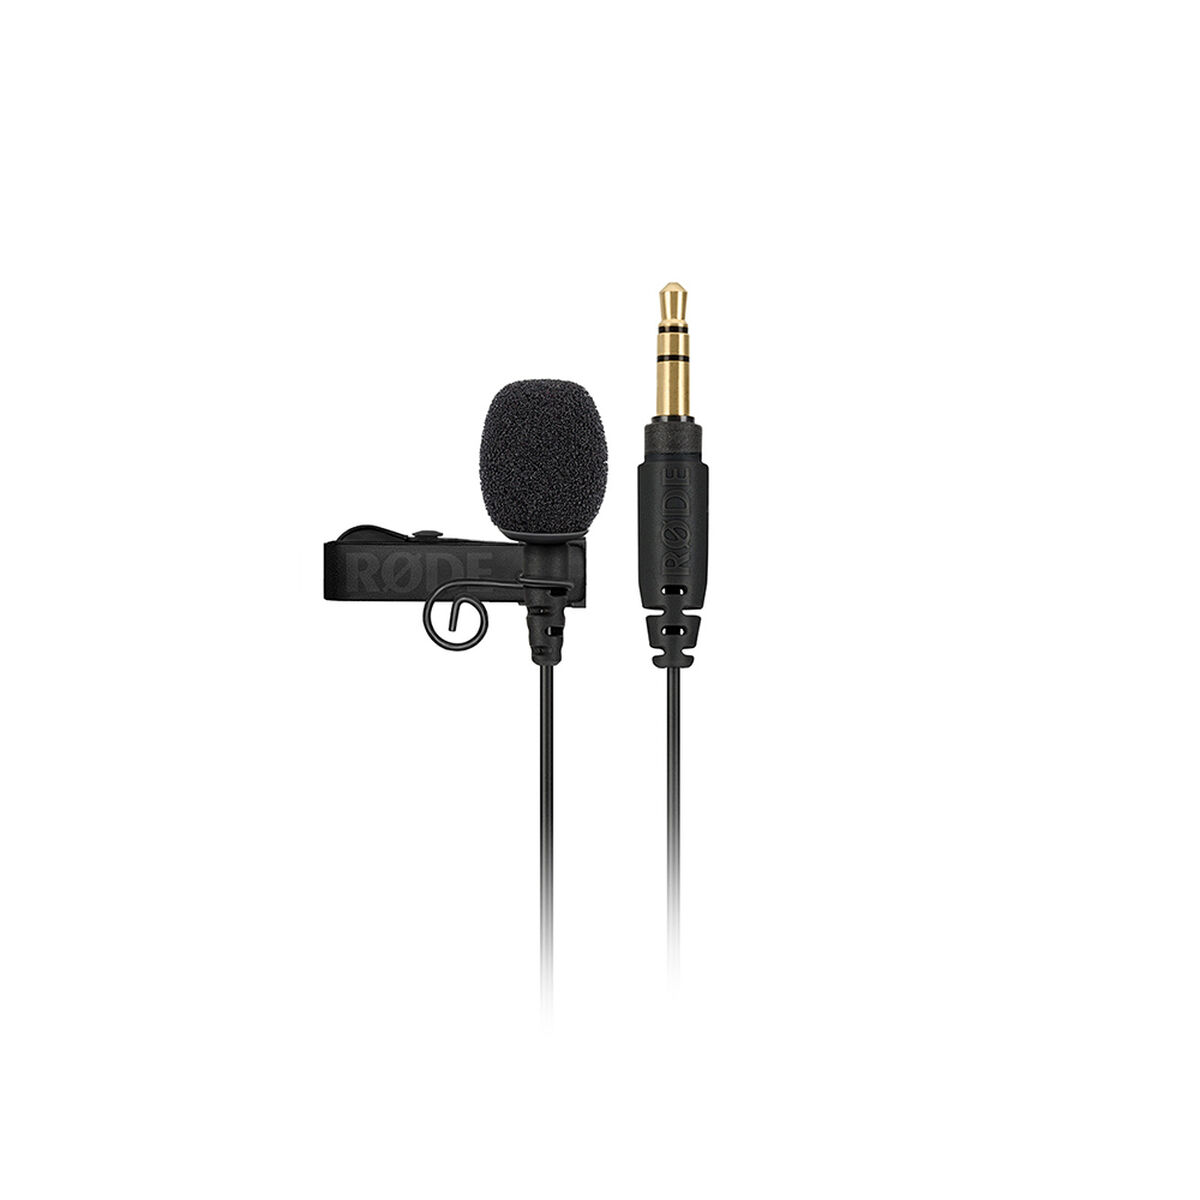 Osta tuote Rinnusmikrofoni Rode Microphones LAVALIER GO verkkokaupastamme Korhone: Tietokoneet & Elektroniikka 20% alennuksella koodilla VIIKONLOPPU